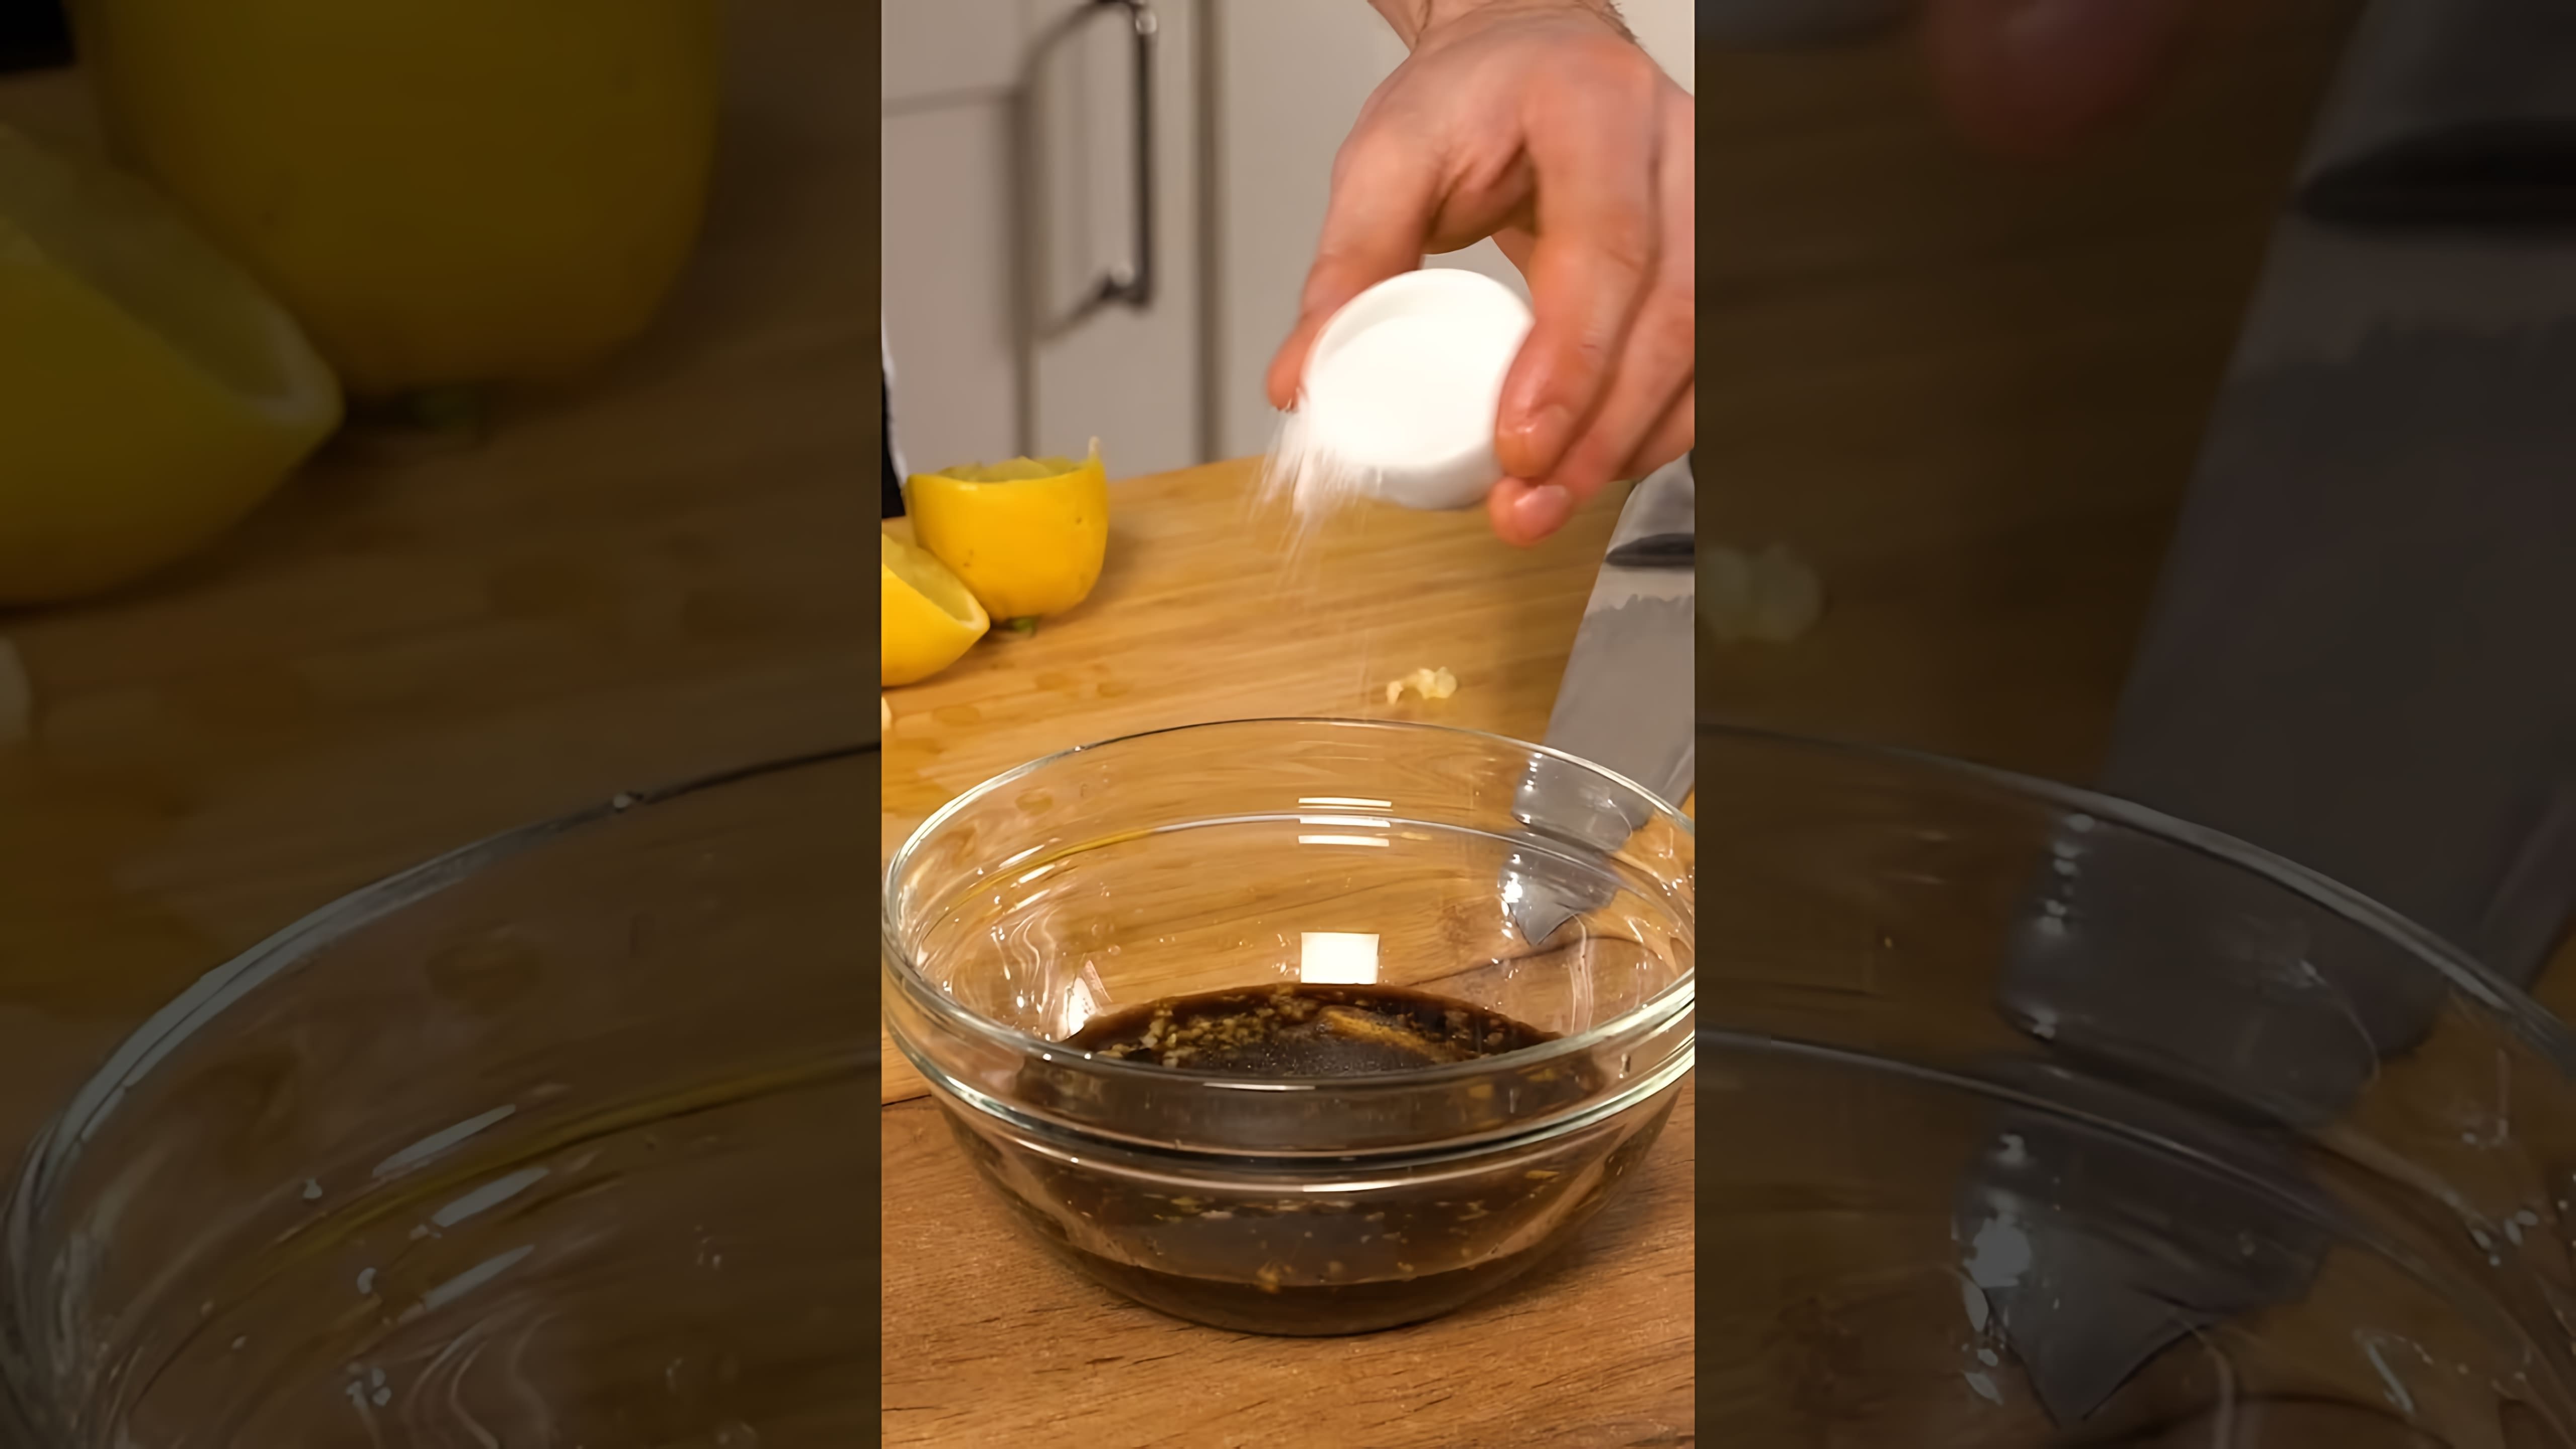 В этом видео демонстрируется процесс приготовления маринада для шашлыка с использованием соевого соуса